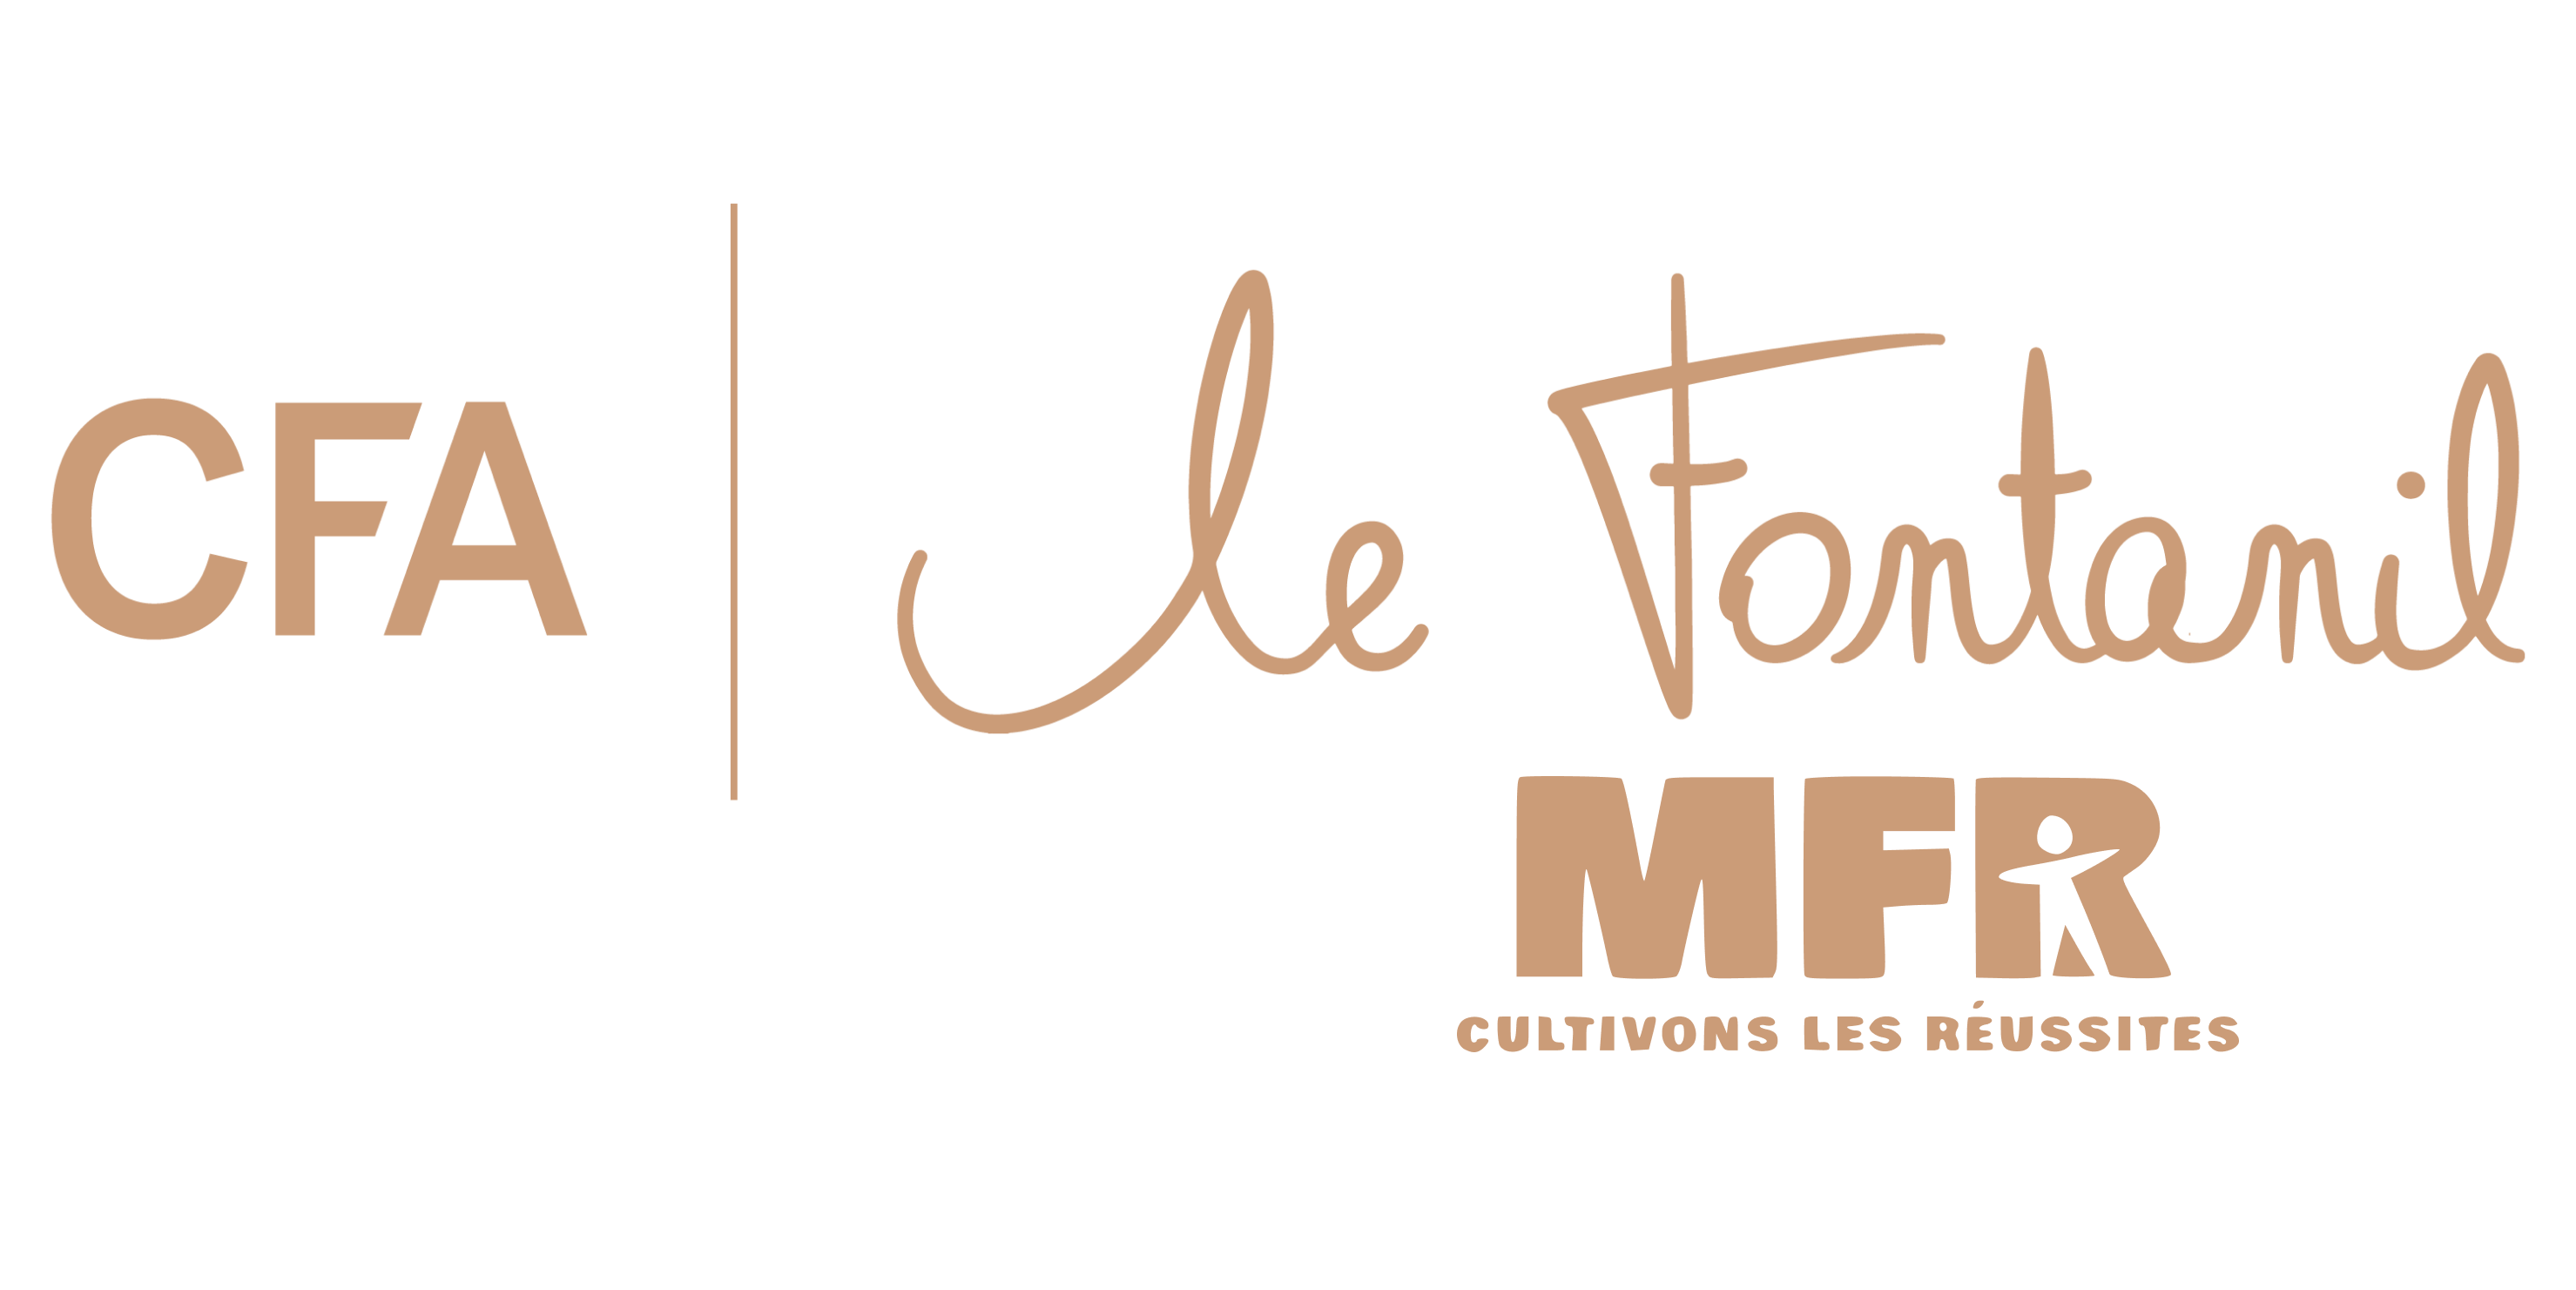 fontanil-mfr-logo